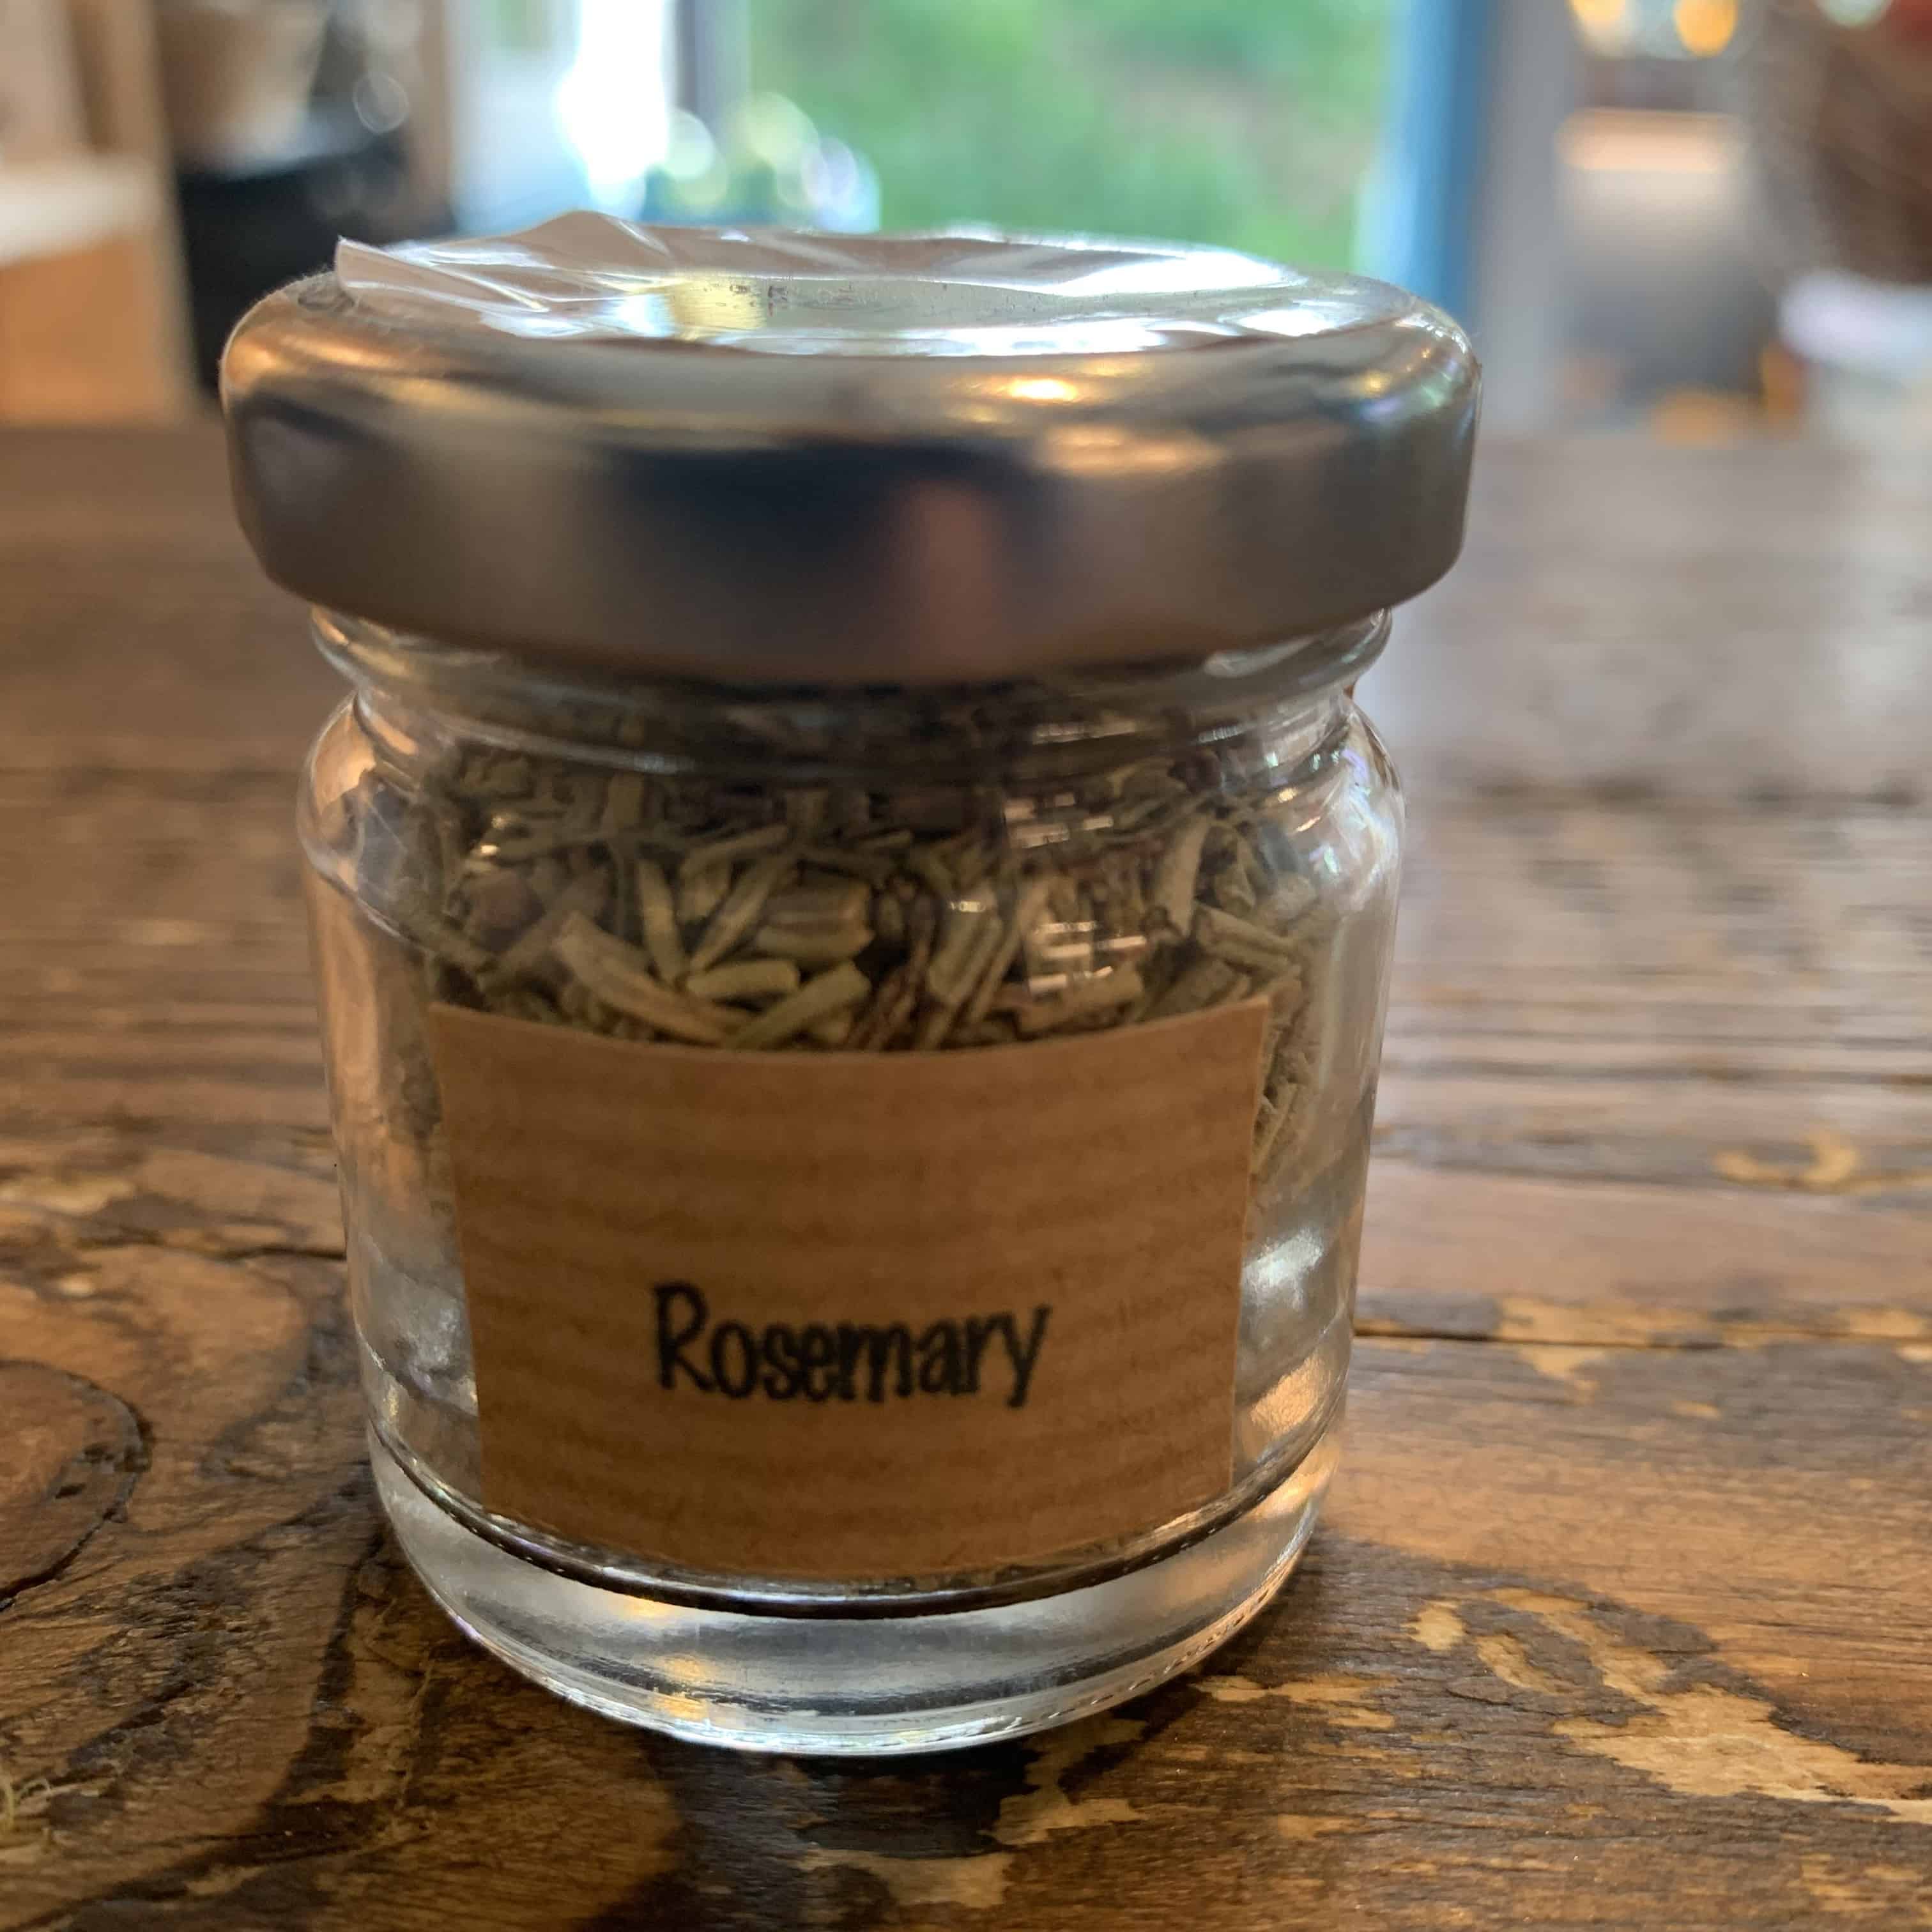 Farmgate Rosemary